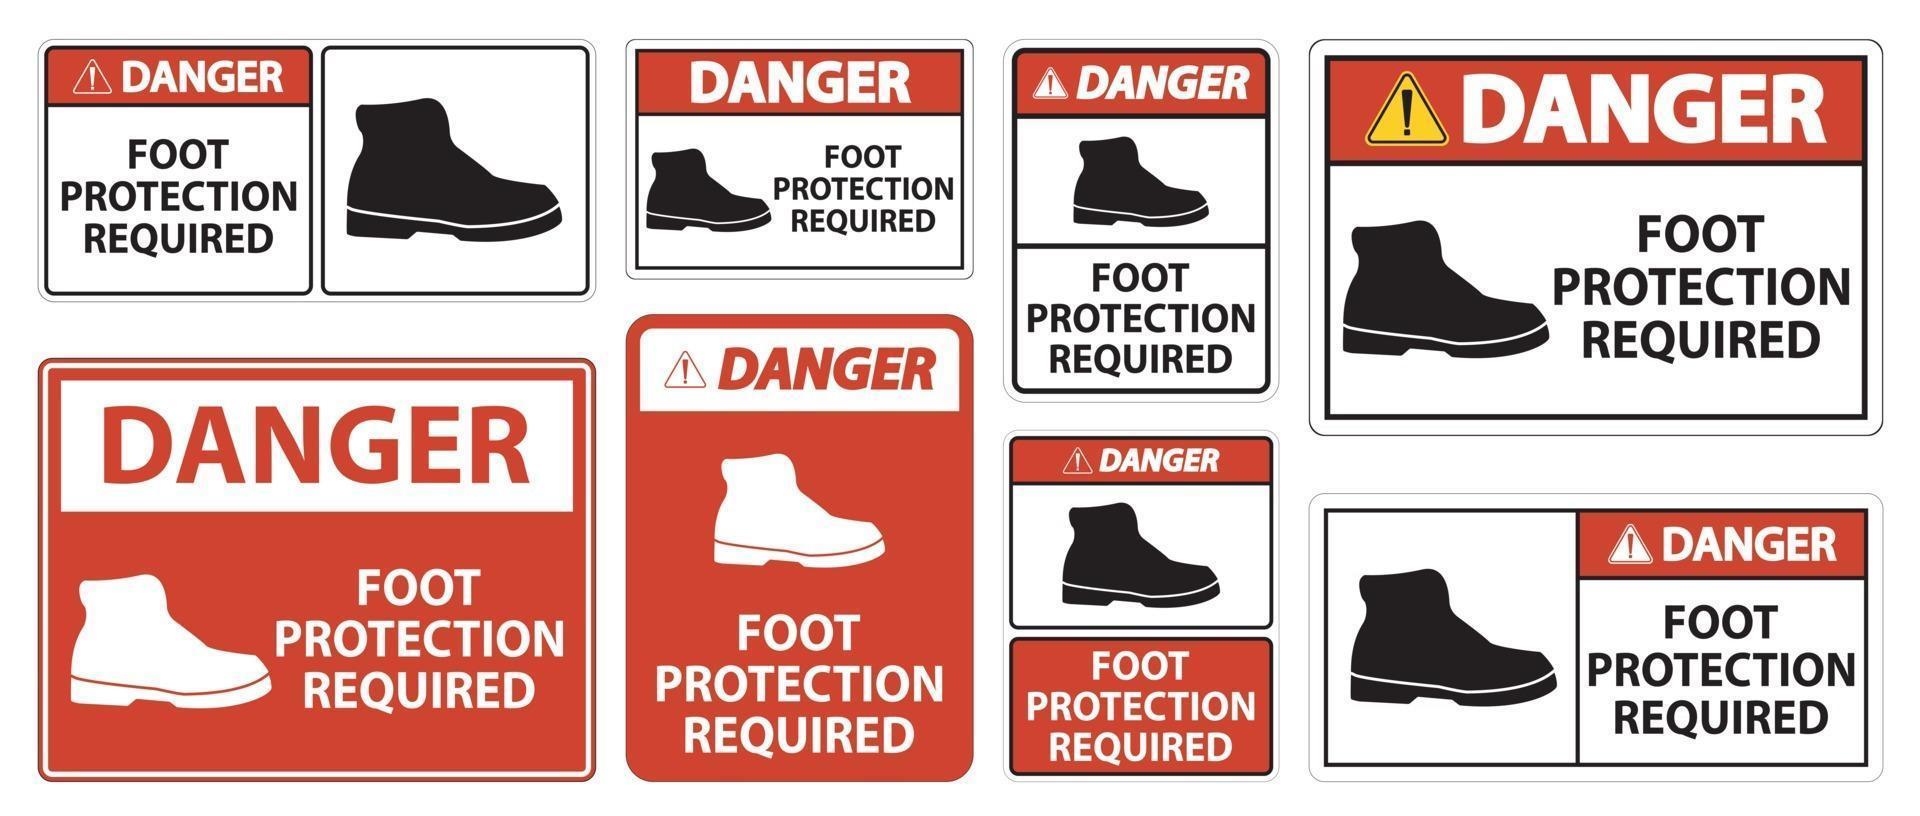 La protection des pieds de danger requis mur symbole signe isoler sur fond transparent, illustration vectorielle vecteur